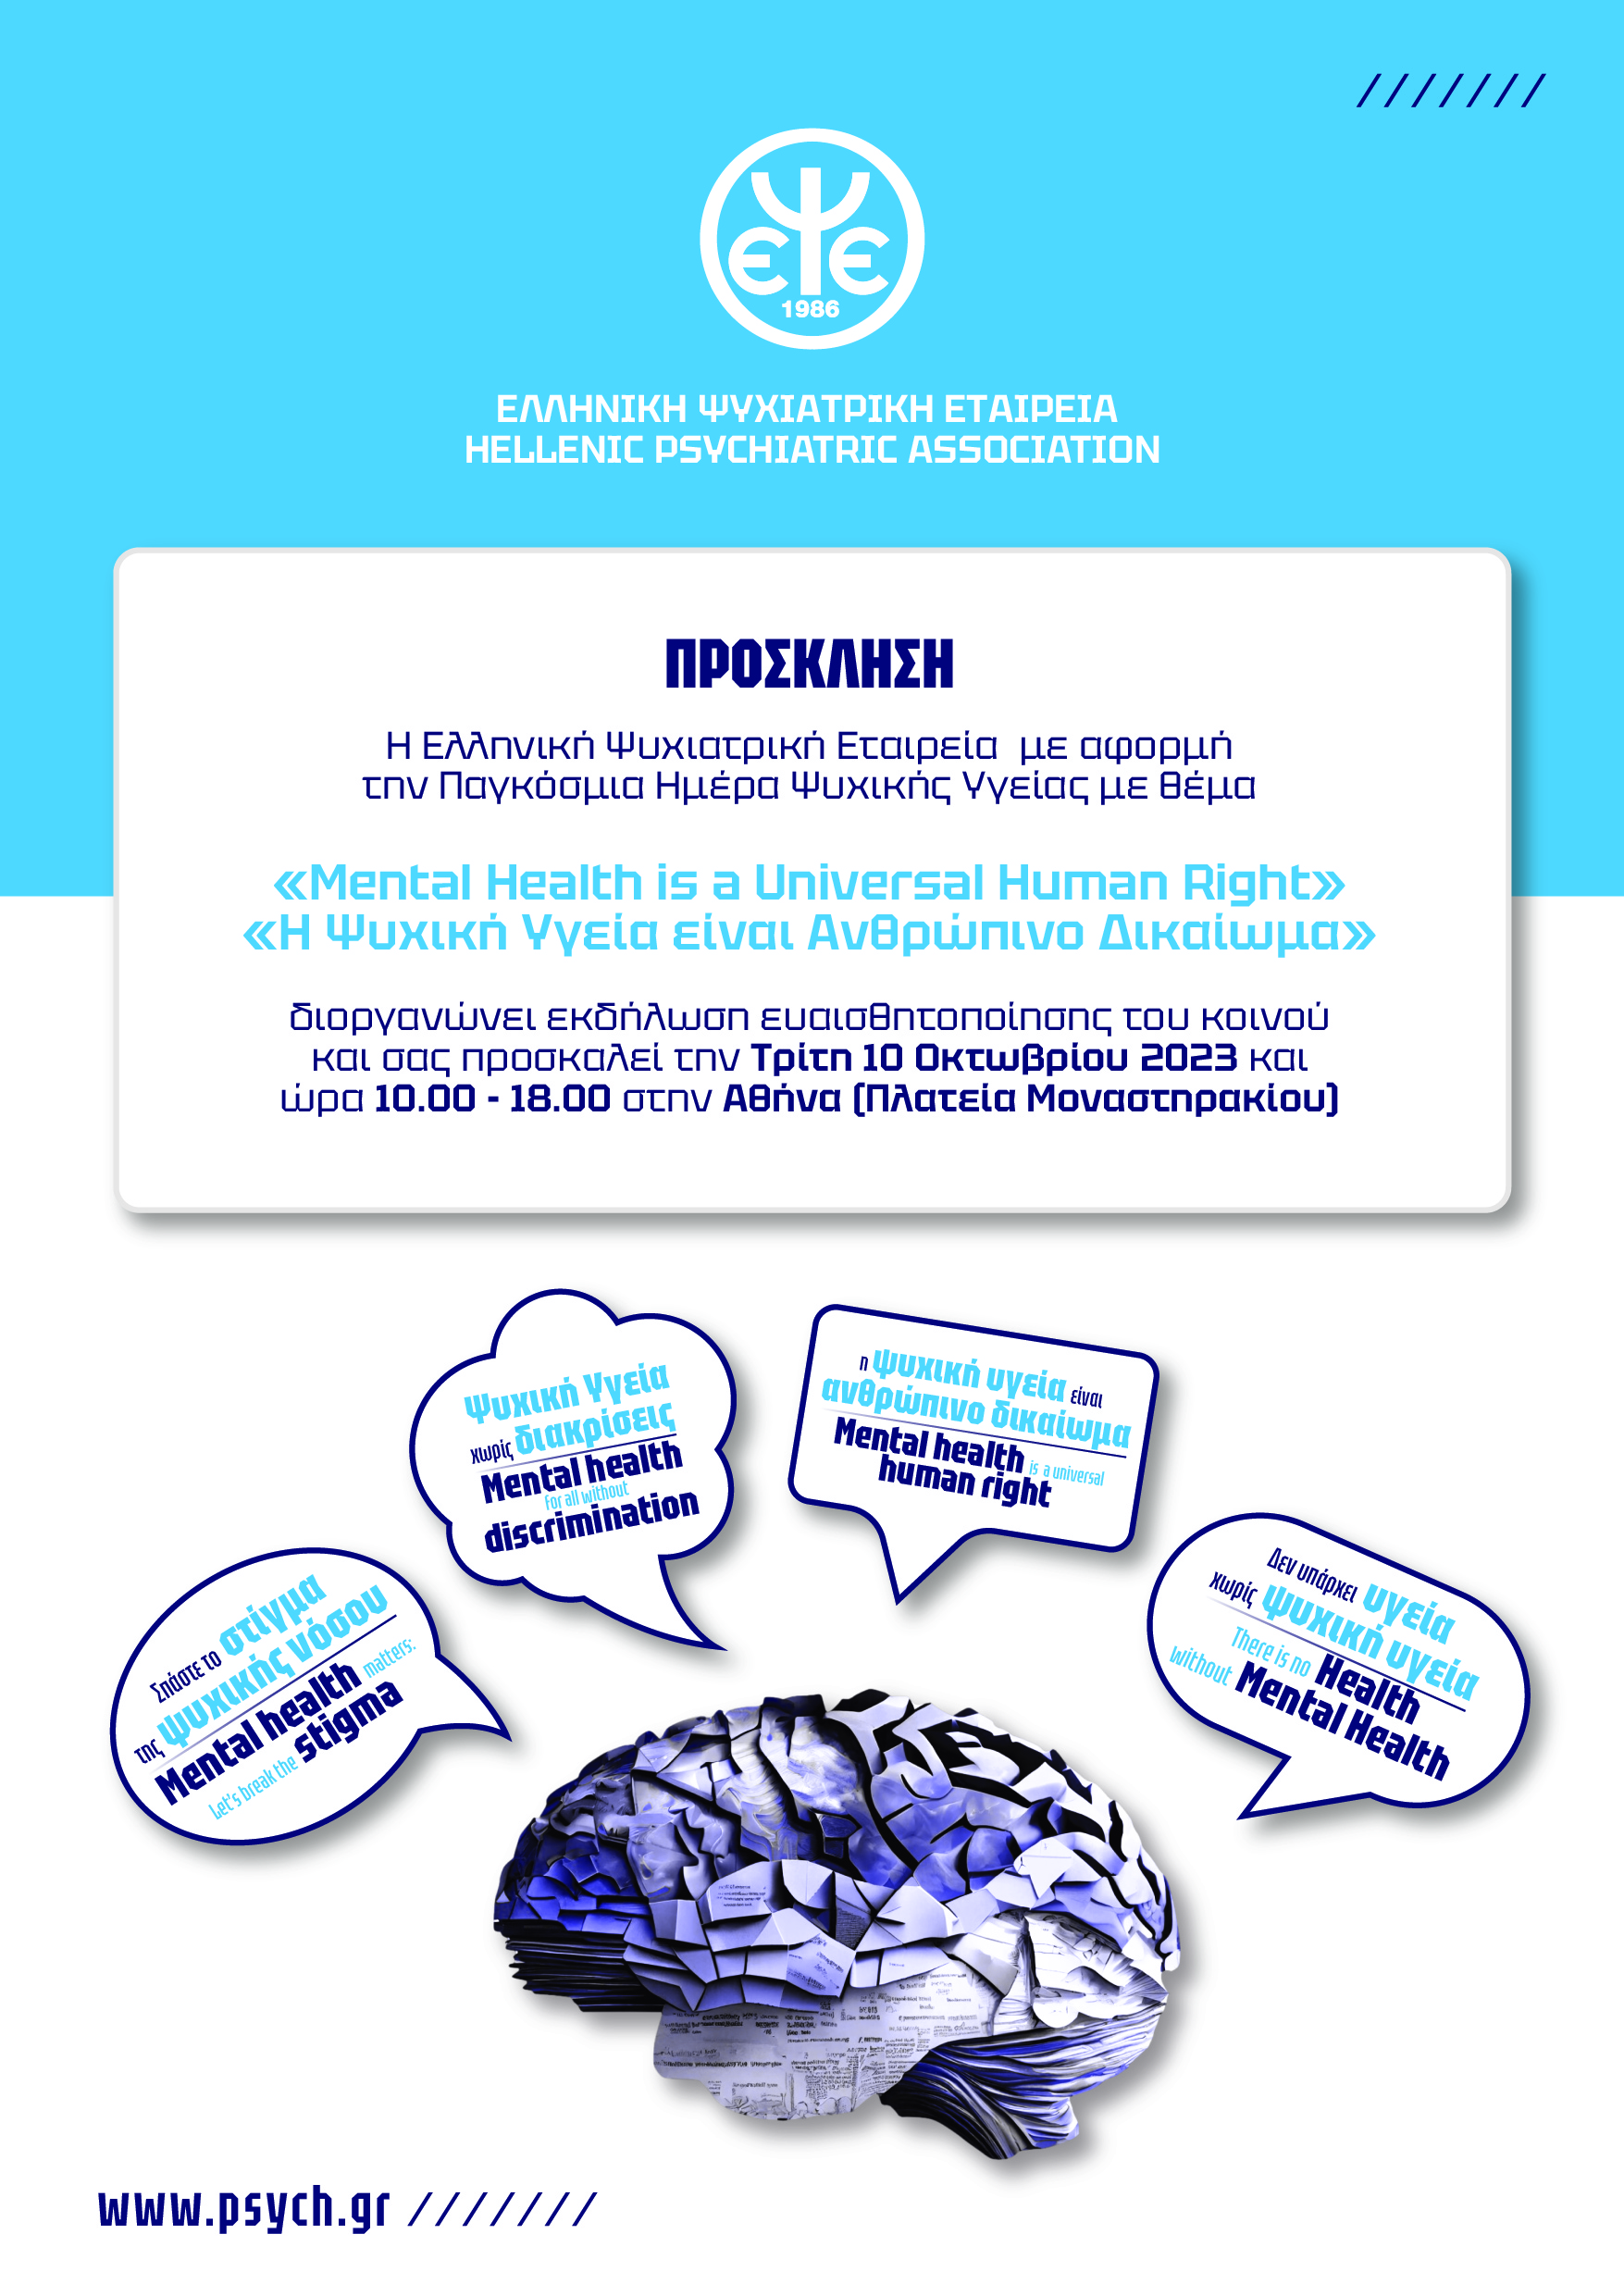 Εκδήλωση ευαισθητοποίησης του κοινού της Ελληνικής Ψυχιατρικής Εταιρείας για την  “Παγκόσμια Ημέρα Ψυχικής Υγείας, 10 Οκτωβρίου 2023